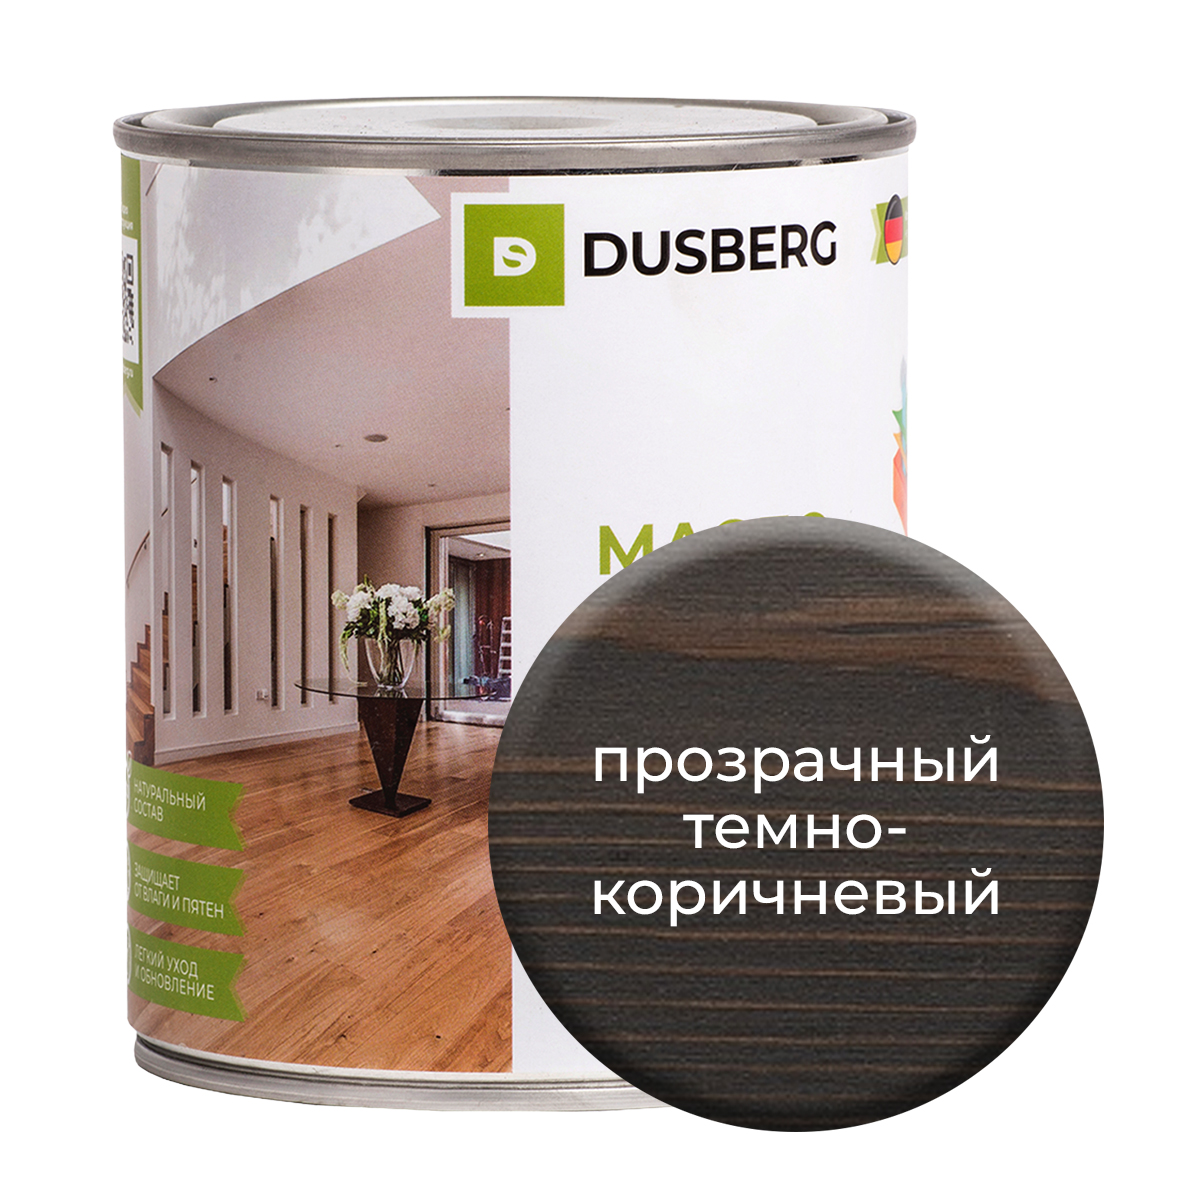 Масло Dusberg с твердым воском на бесцветной основе, 750 мл Прозрачный темно-коричневый